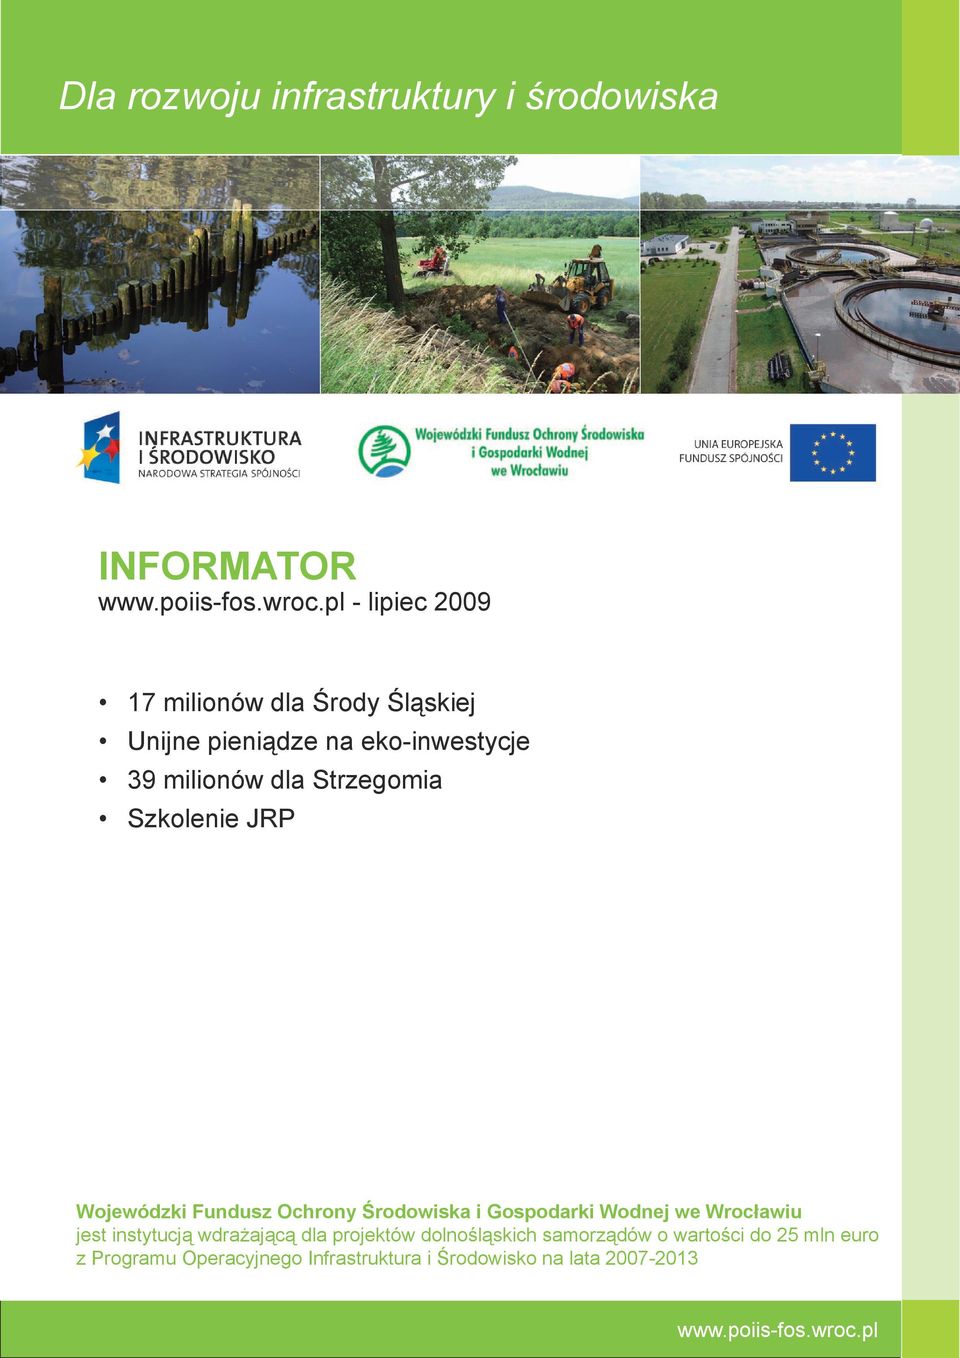 Ochrony Środowiska i Gospodarki Wodnej we Wrocławiu jest instytucją wdrażającą dla projektów